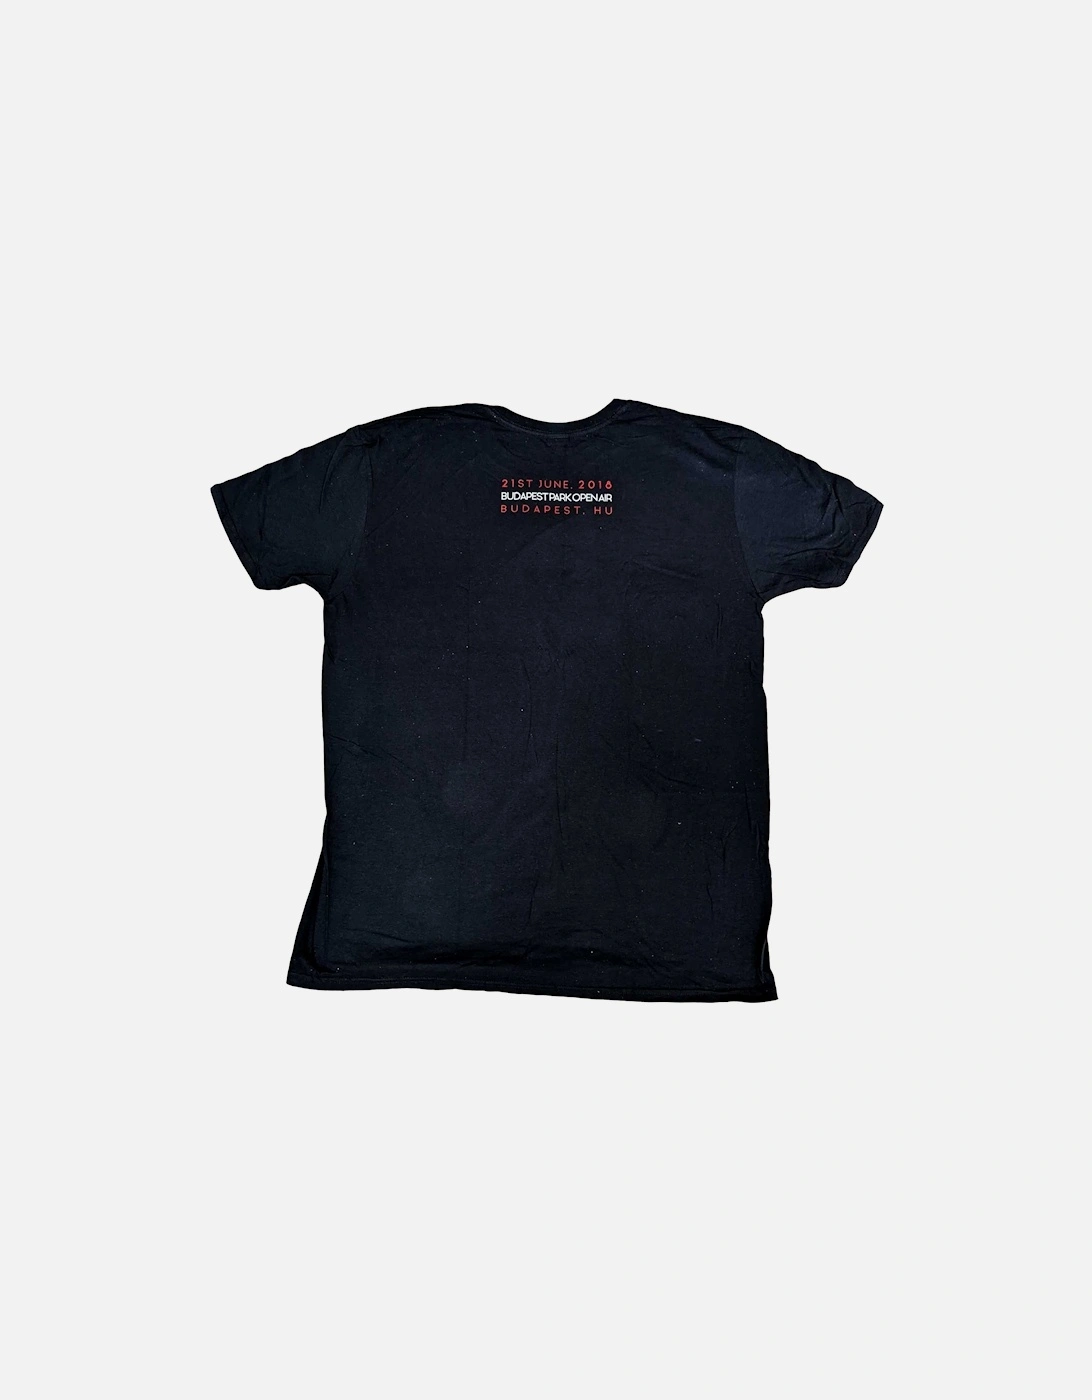 Unisex Adult Budapest 2018 T-Shirt